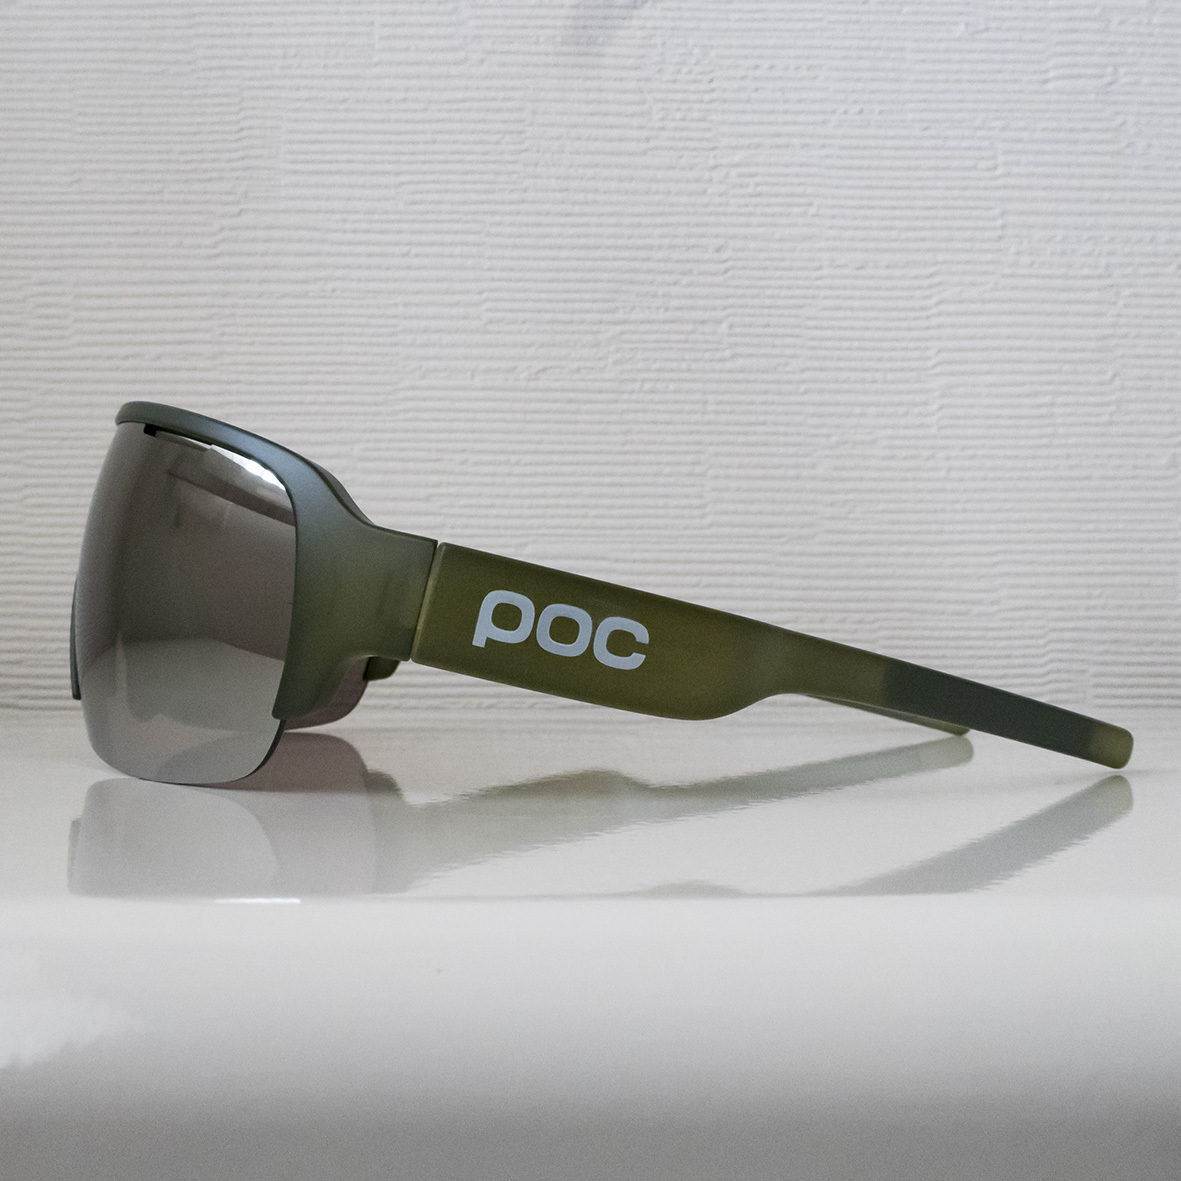  новый товар не использовался бесплатная доставка POCpokDO HALF BLADE солнцезащитные очки осмотр шоссейный велосипед гибридный велосипед gravel MTB бейсбол бег Trail 